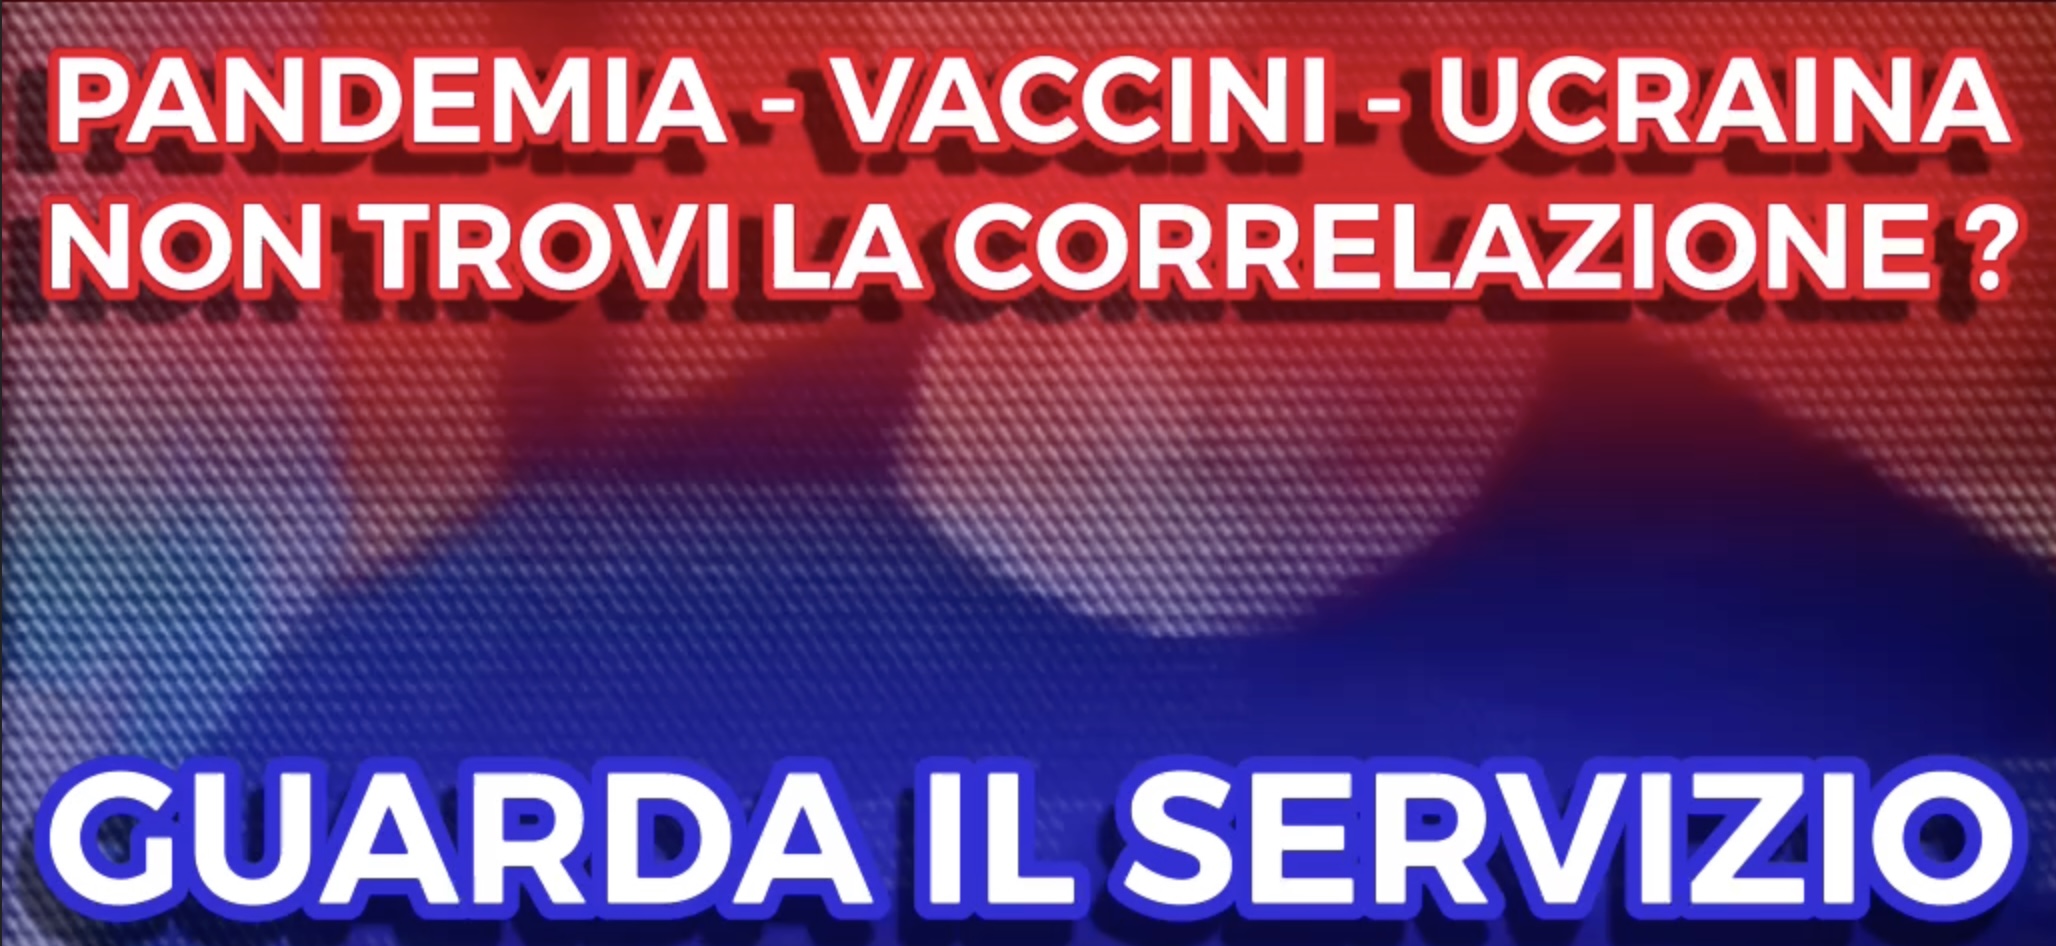 Pandemia Vaccini Ucraina - Non trovi la Correlazione?